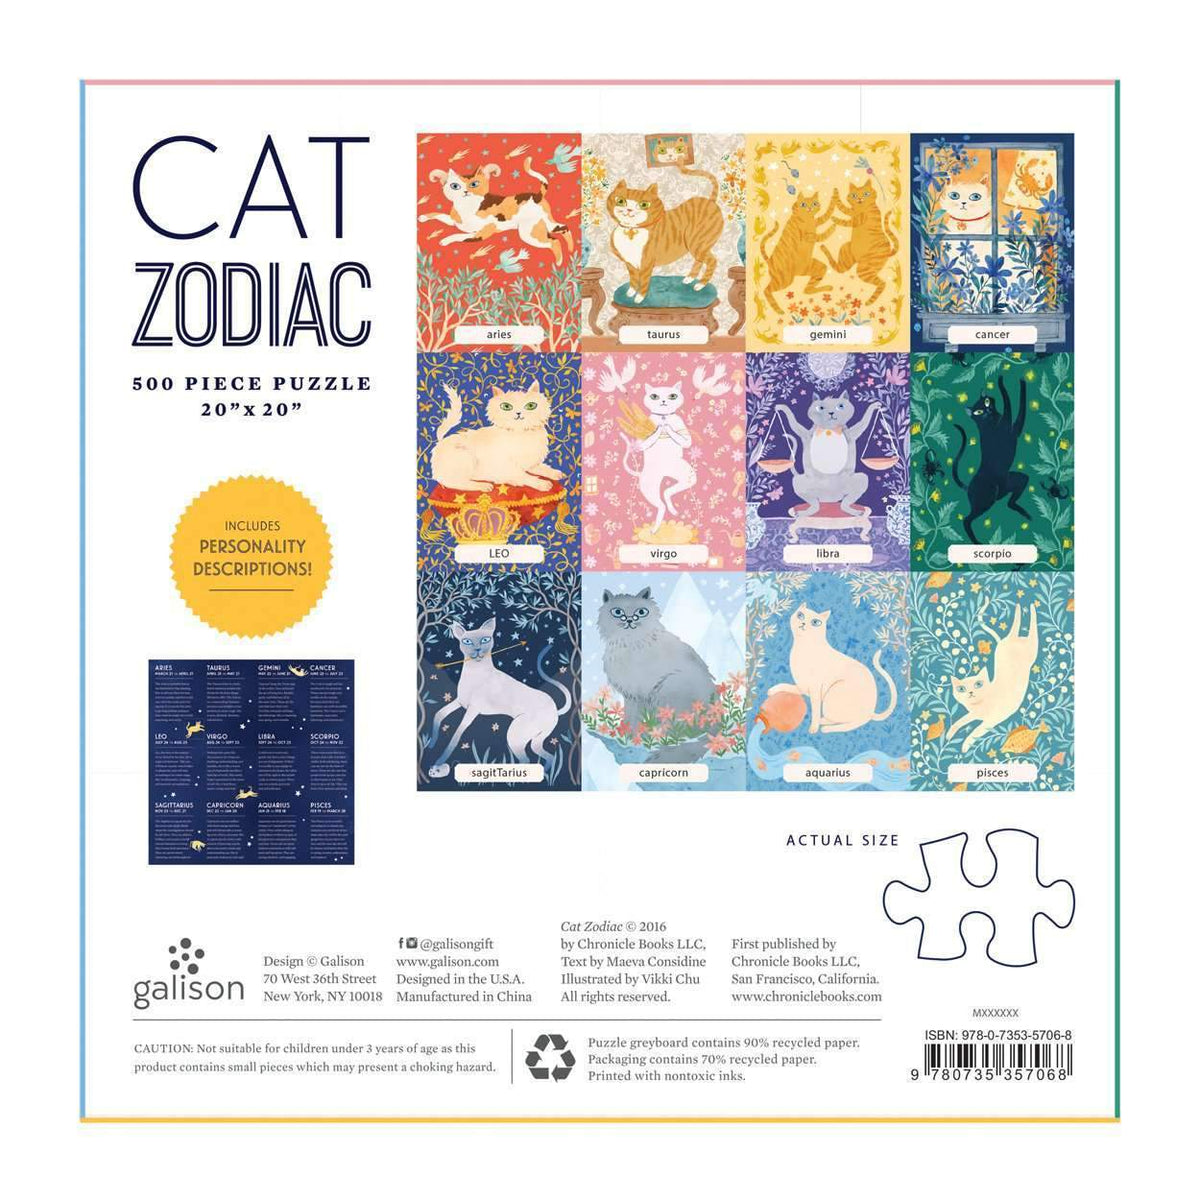 Cat Zodiac 500 Piece Puzzle 500 Piece Puzzles Galison 